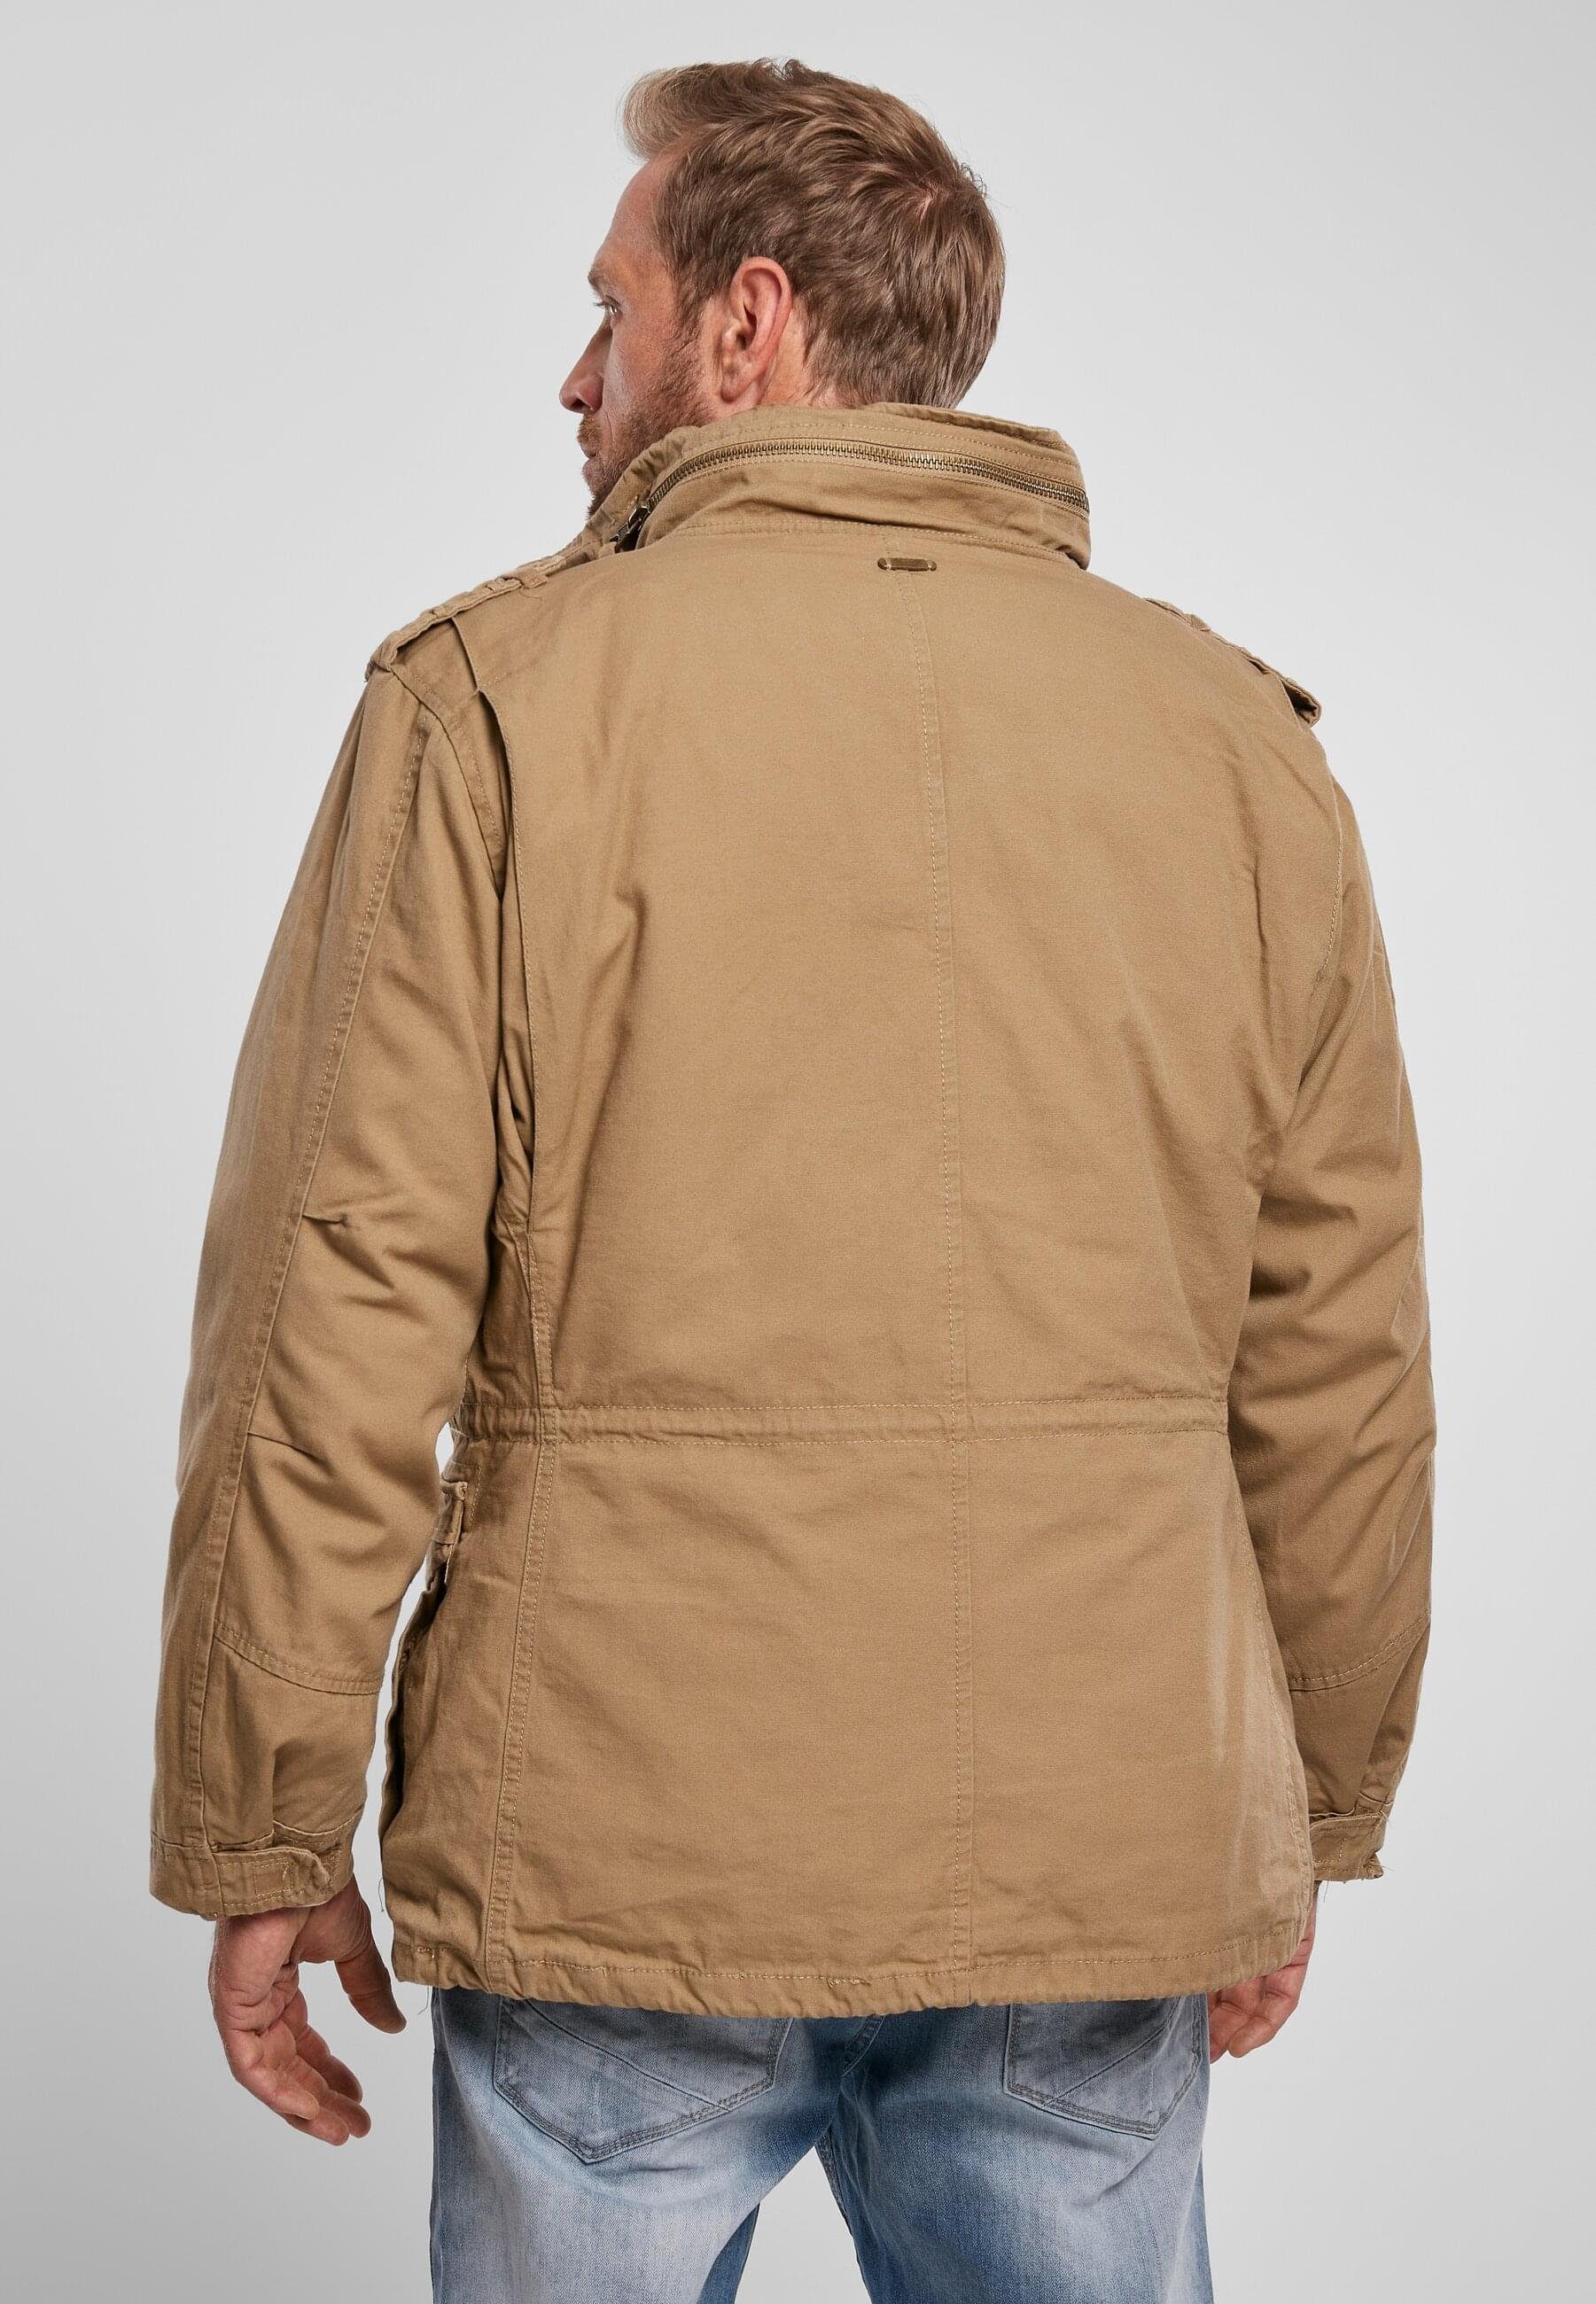 Herren M-65 Wintermantel camel Brandit Giant Jacket